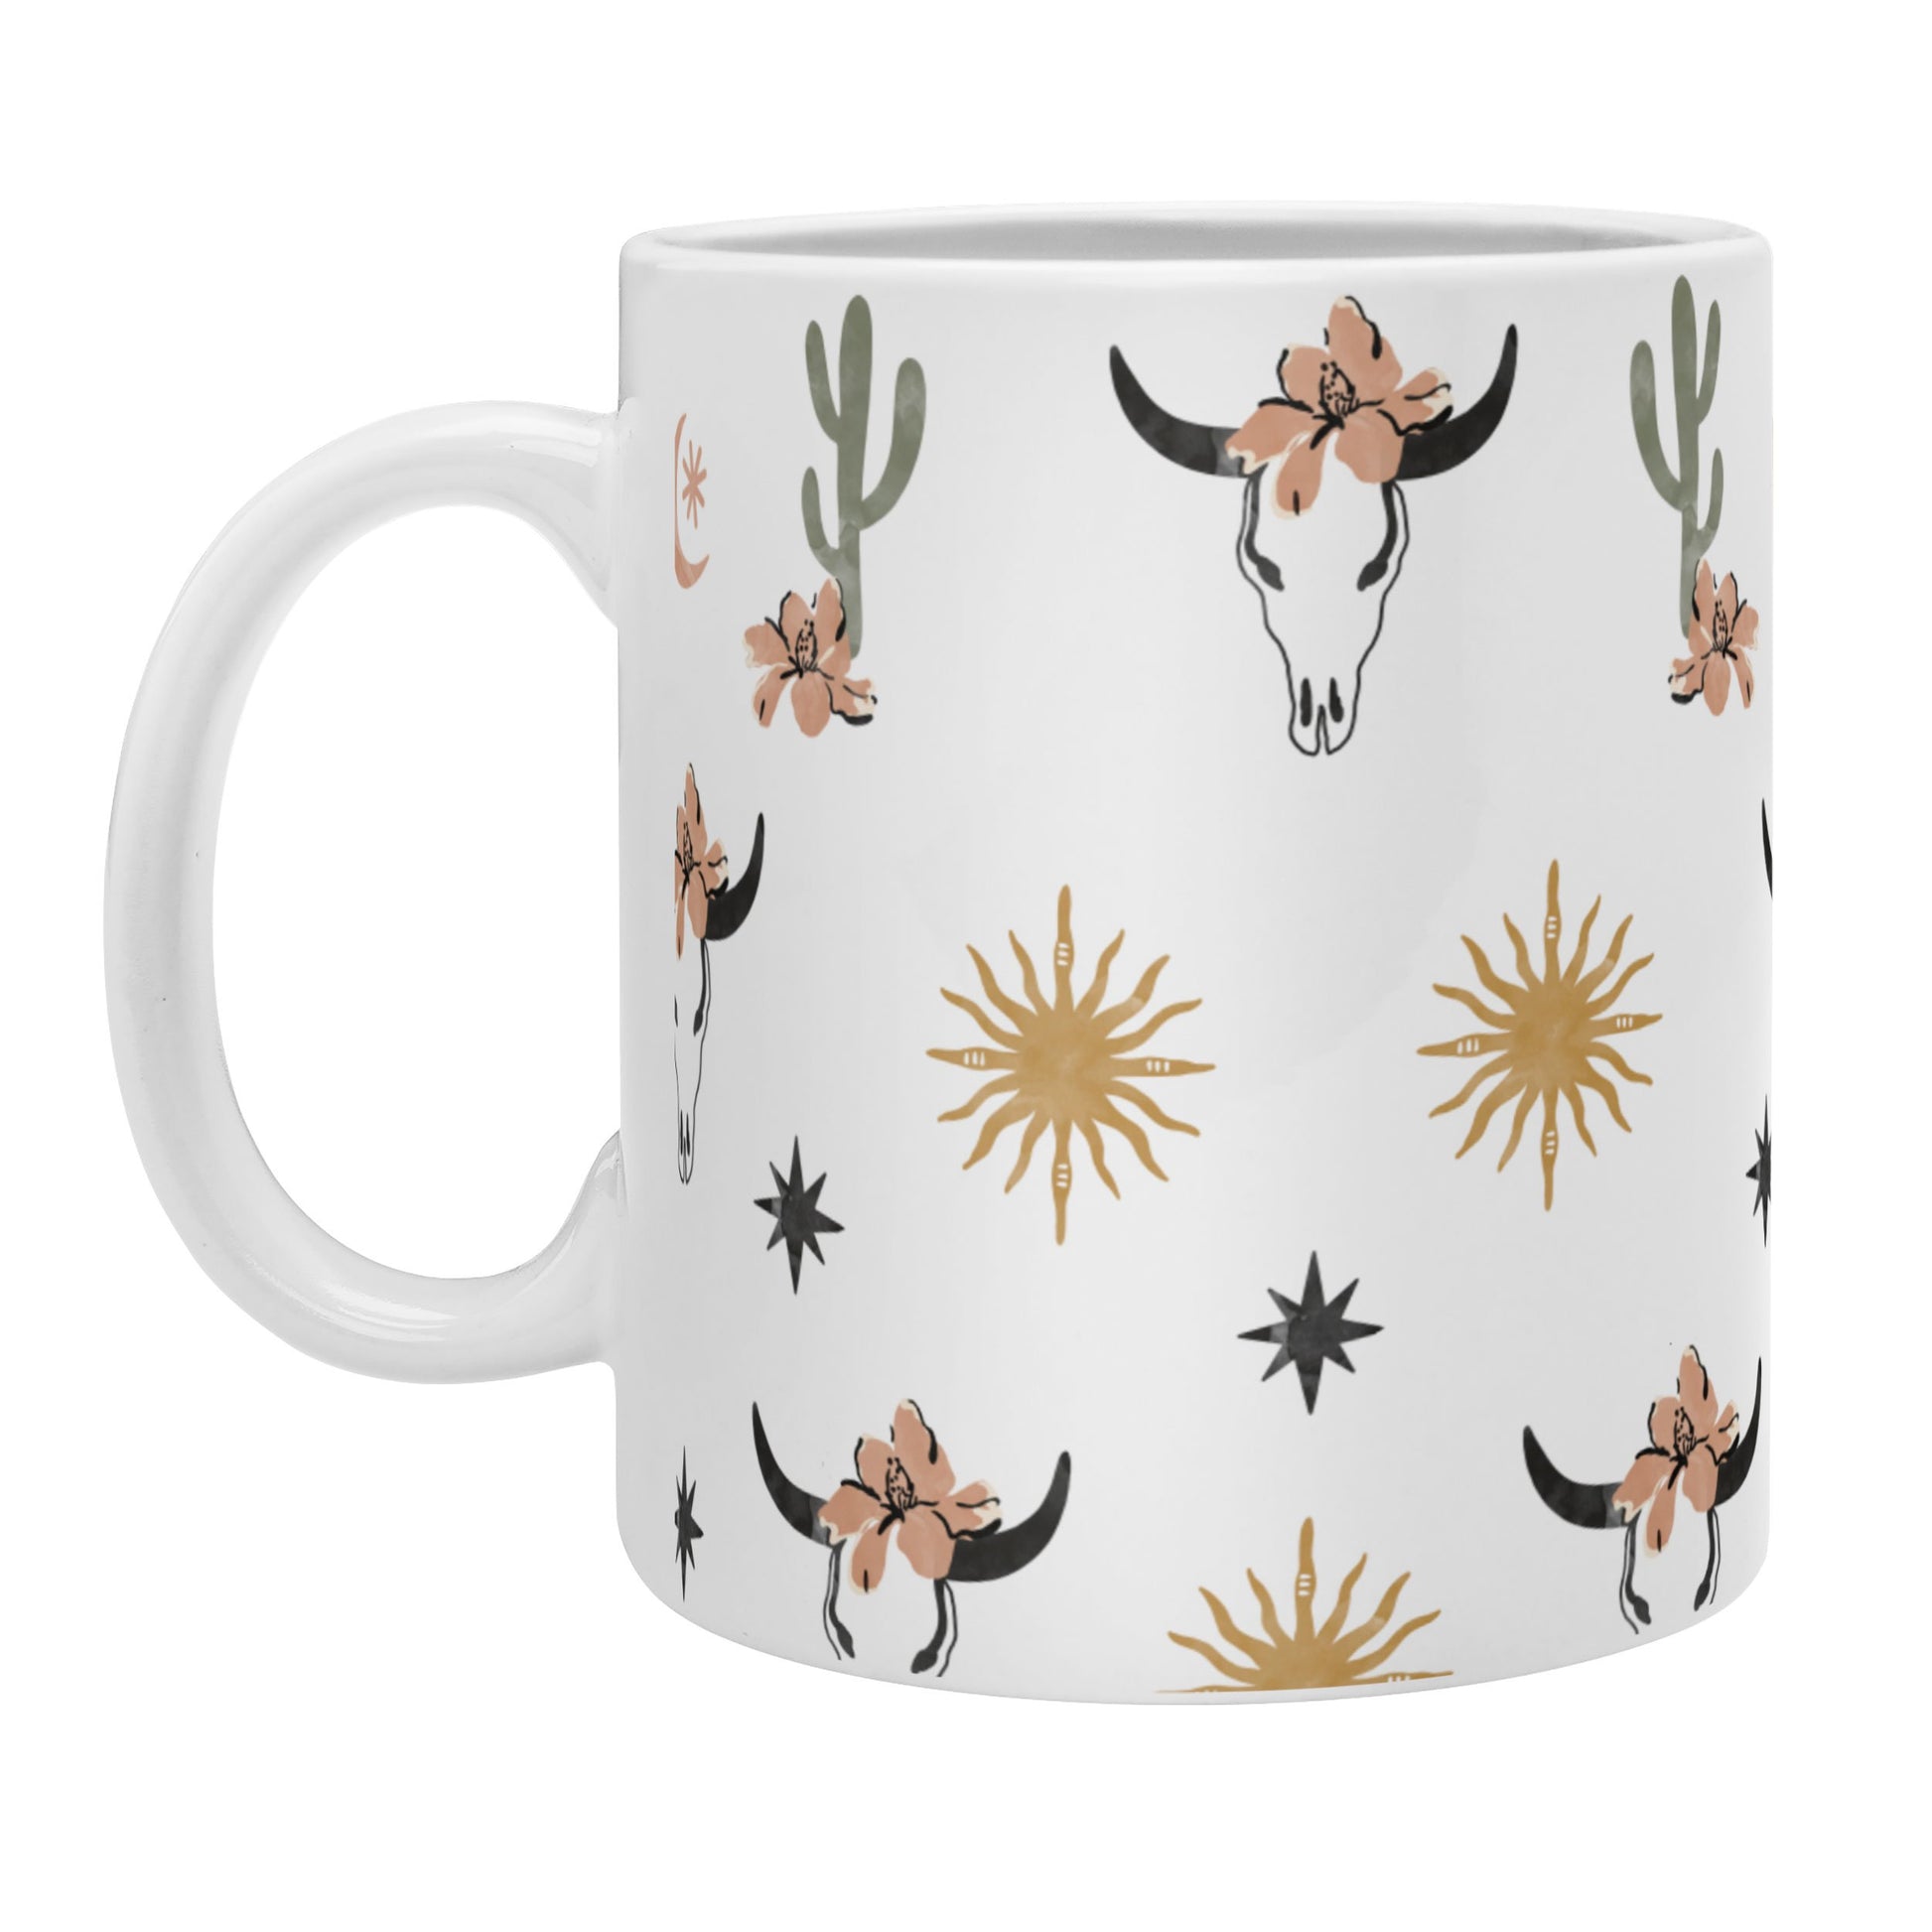 https://baharanchwesternwear.com/cdn/shop/products/marta-barragan-camarasa-western-desert-boho-i-coffee-mug-right.jpg?v=1635802373&width=1946